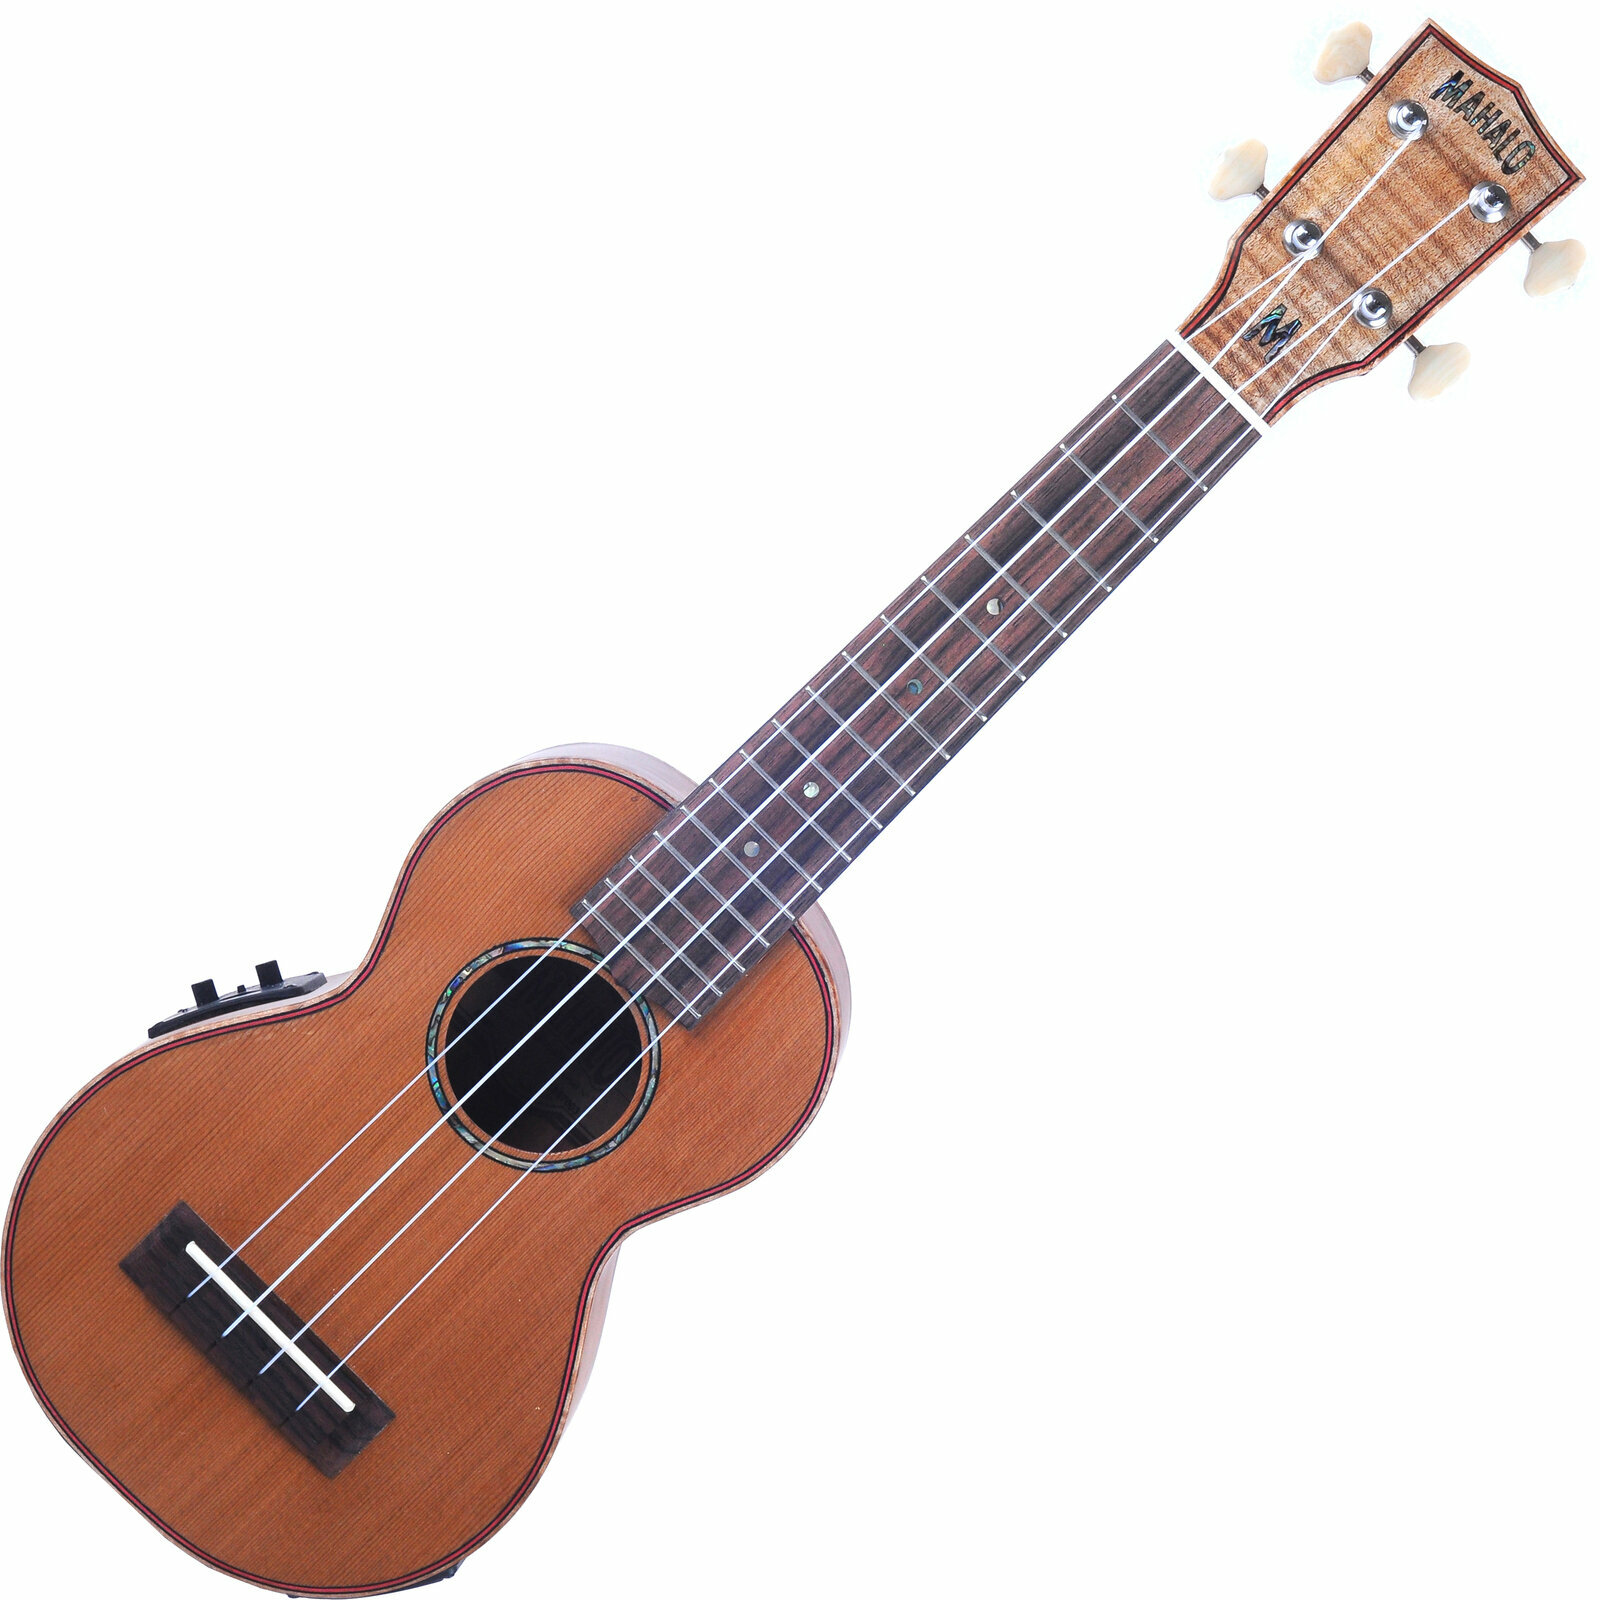 Soprano ukulele Mahalo MM1E Soprano ukulele Natural